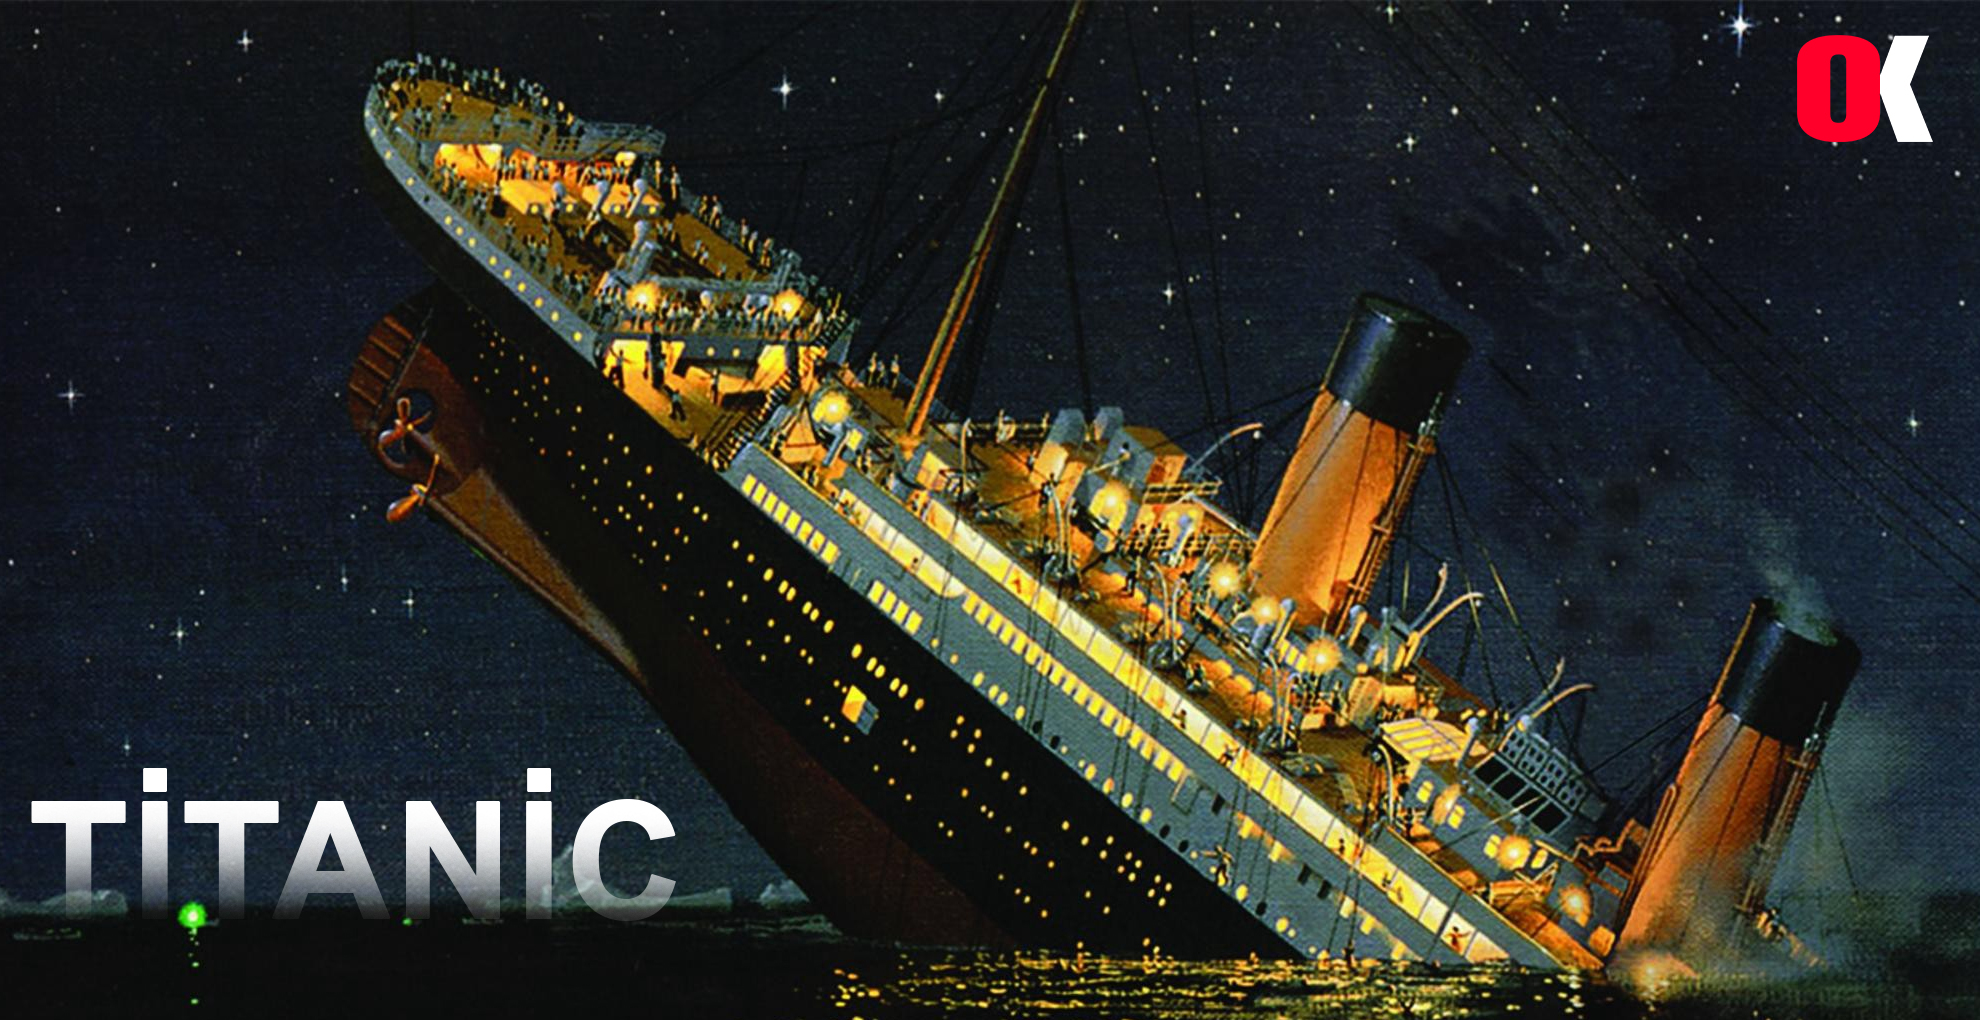 Titanic Kurtarıcısının ‘Aç Gözlü Bir Hazine Avcısı’ Olduğu Söyleniyor 1912